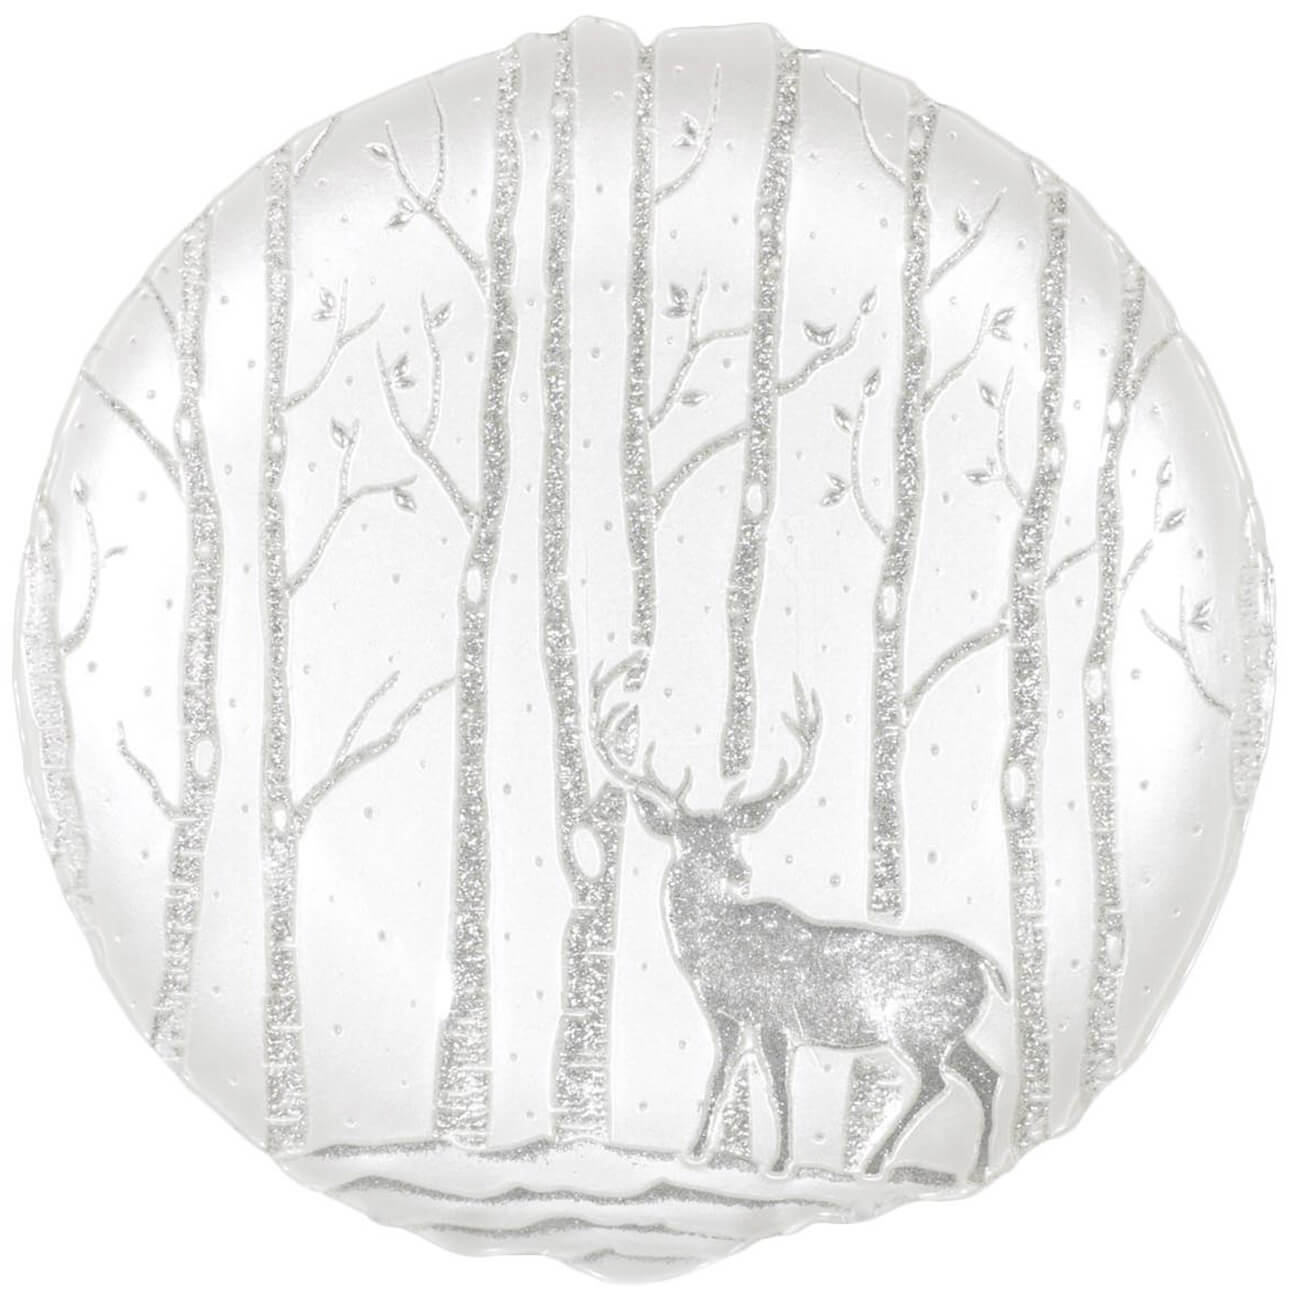 Тарелка обеденная, 28 см, стекло, белая, Олени в лесу, Winter deer